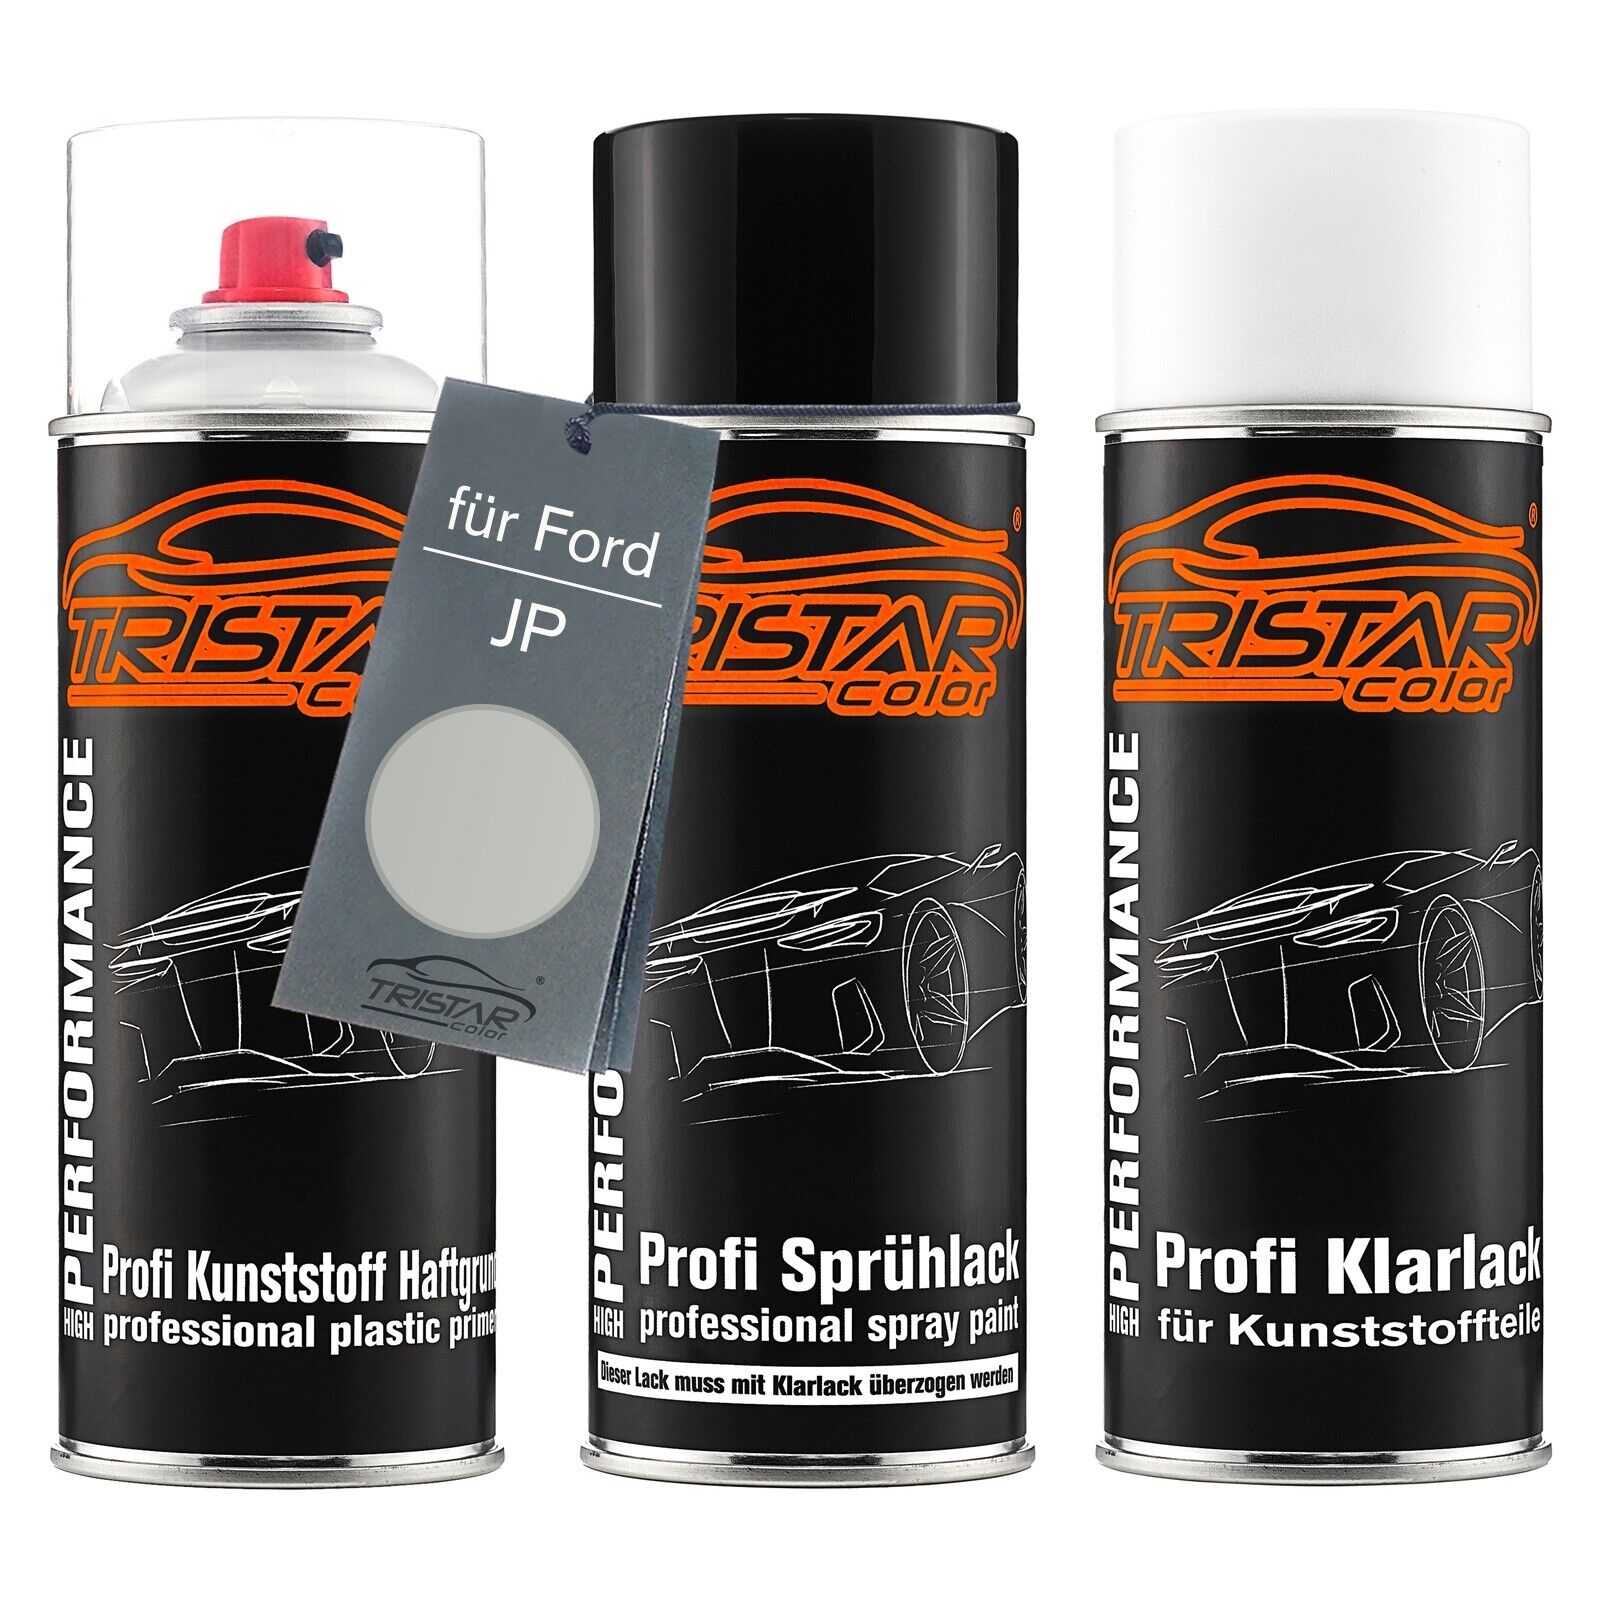 Autolack Spraydosen Set für Kunststoff für Ford JP Prato Boden Metallic